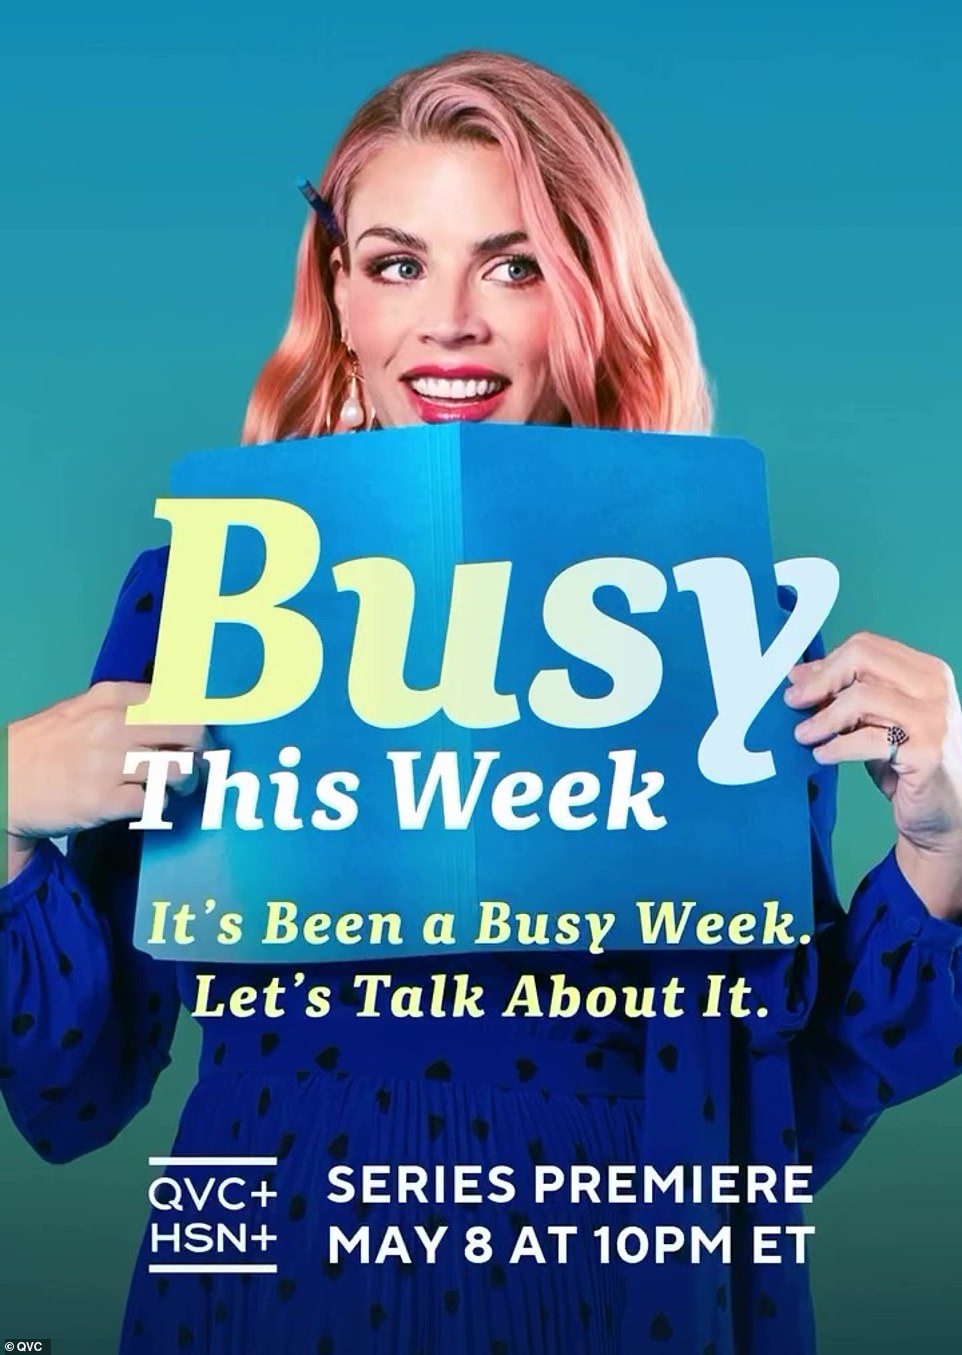 Премьера второго ночного ток-шоу подкастера Doing Her Best «Занят на этой неделе» состоится 8 мая на каналах QVC+ и HSN+.